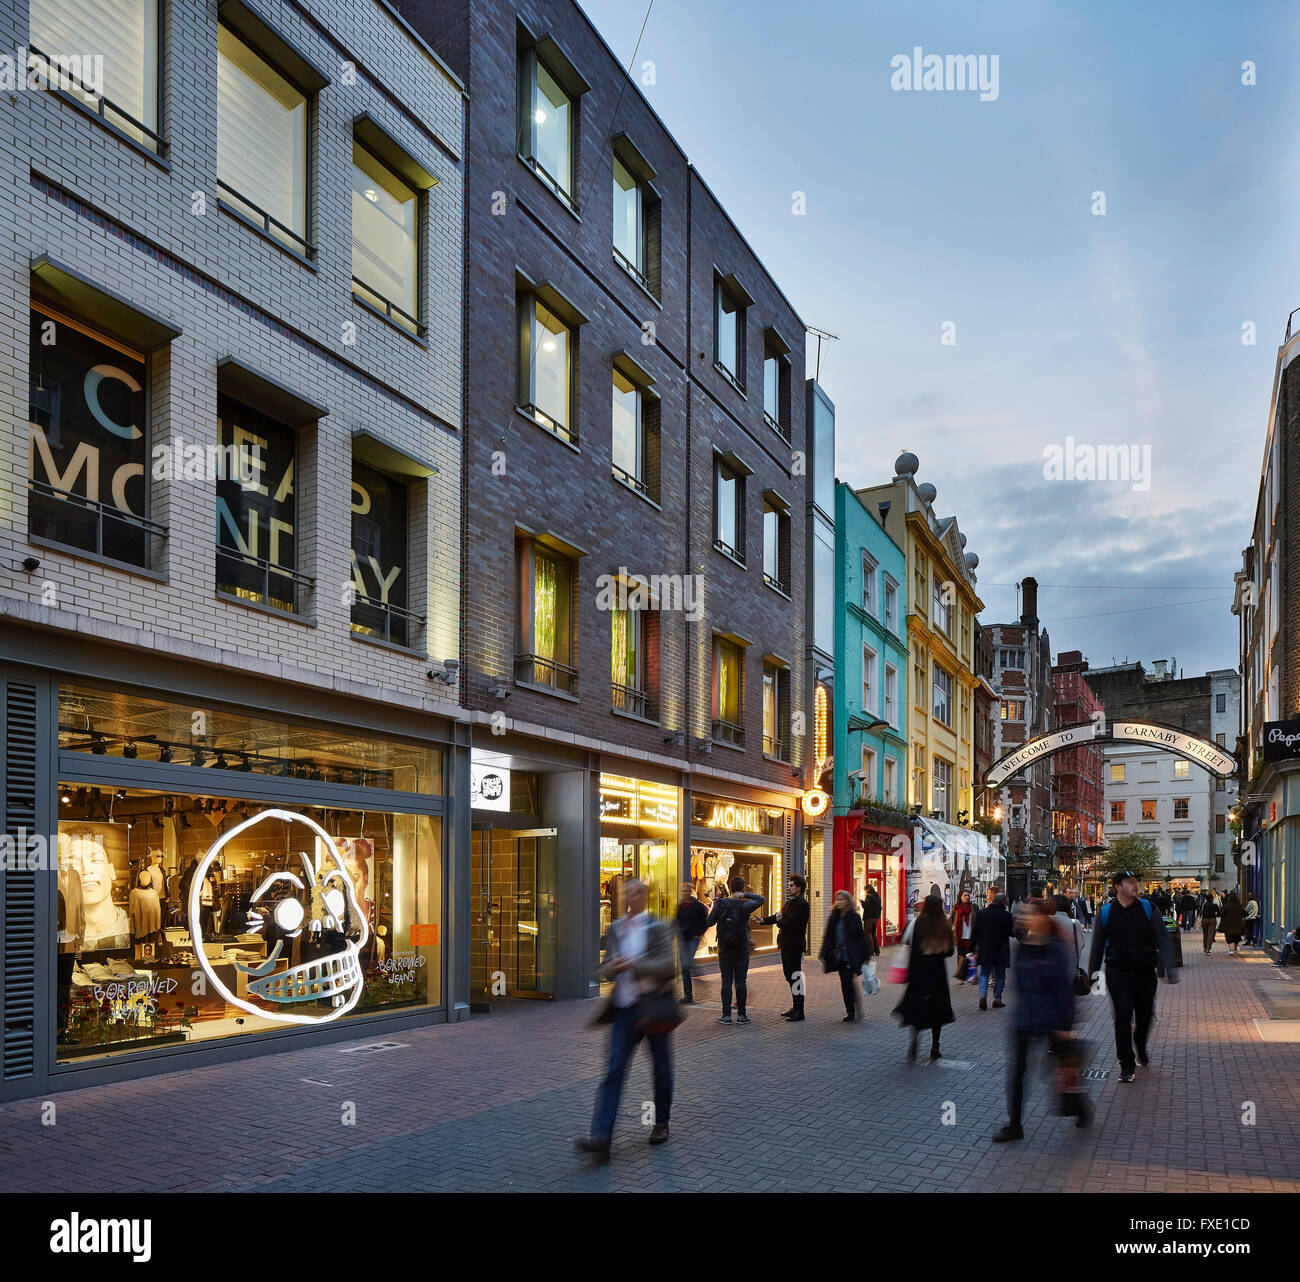 Abenddämmerung Blick entlang der Straße mit beleuchtet Ladeneinrichtungen. 36 Carnaby Street + Carnaby Court, London, Vereinigtes Königreich. Architekt: Rolfe J Stockfoto